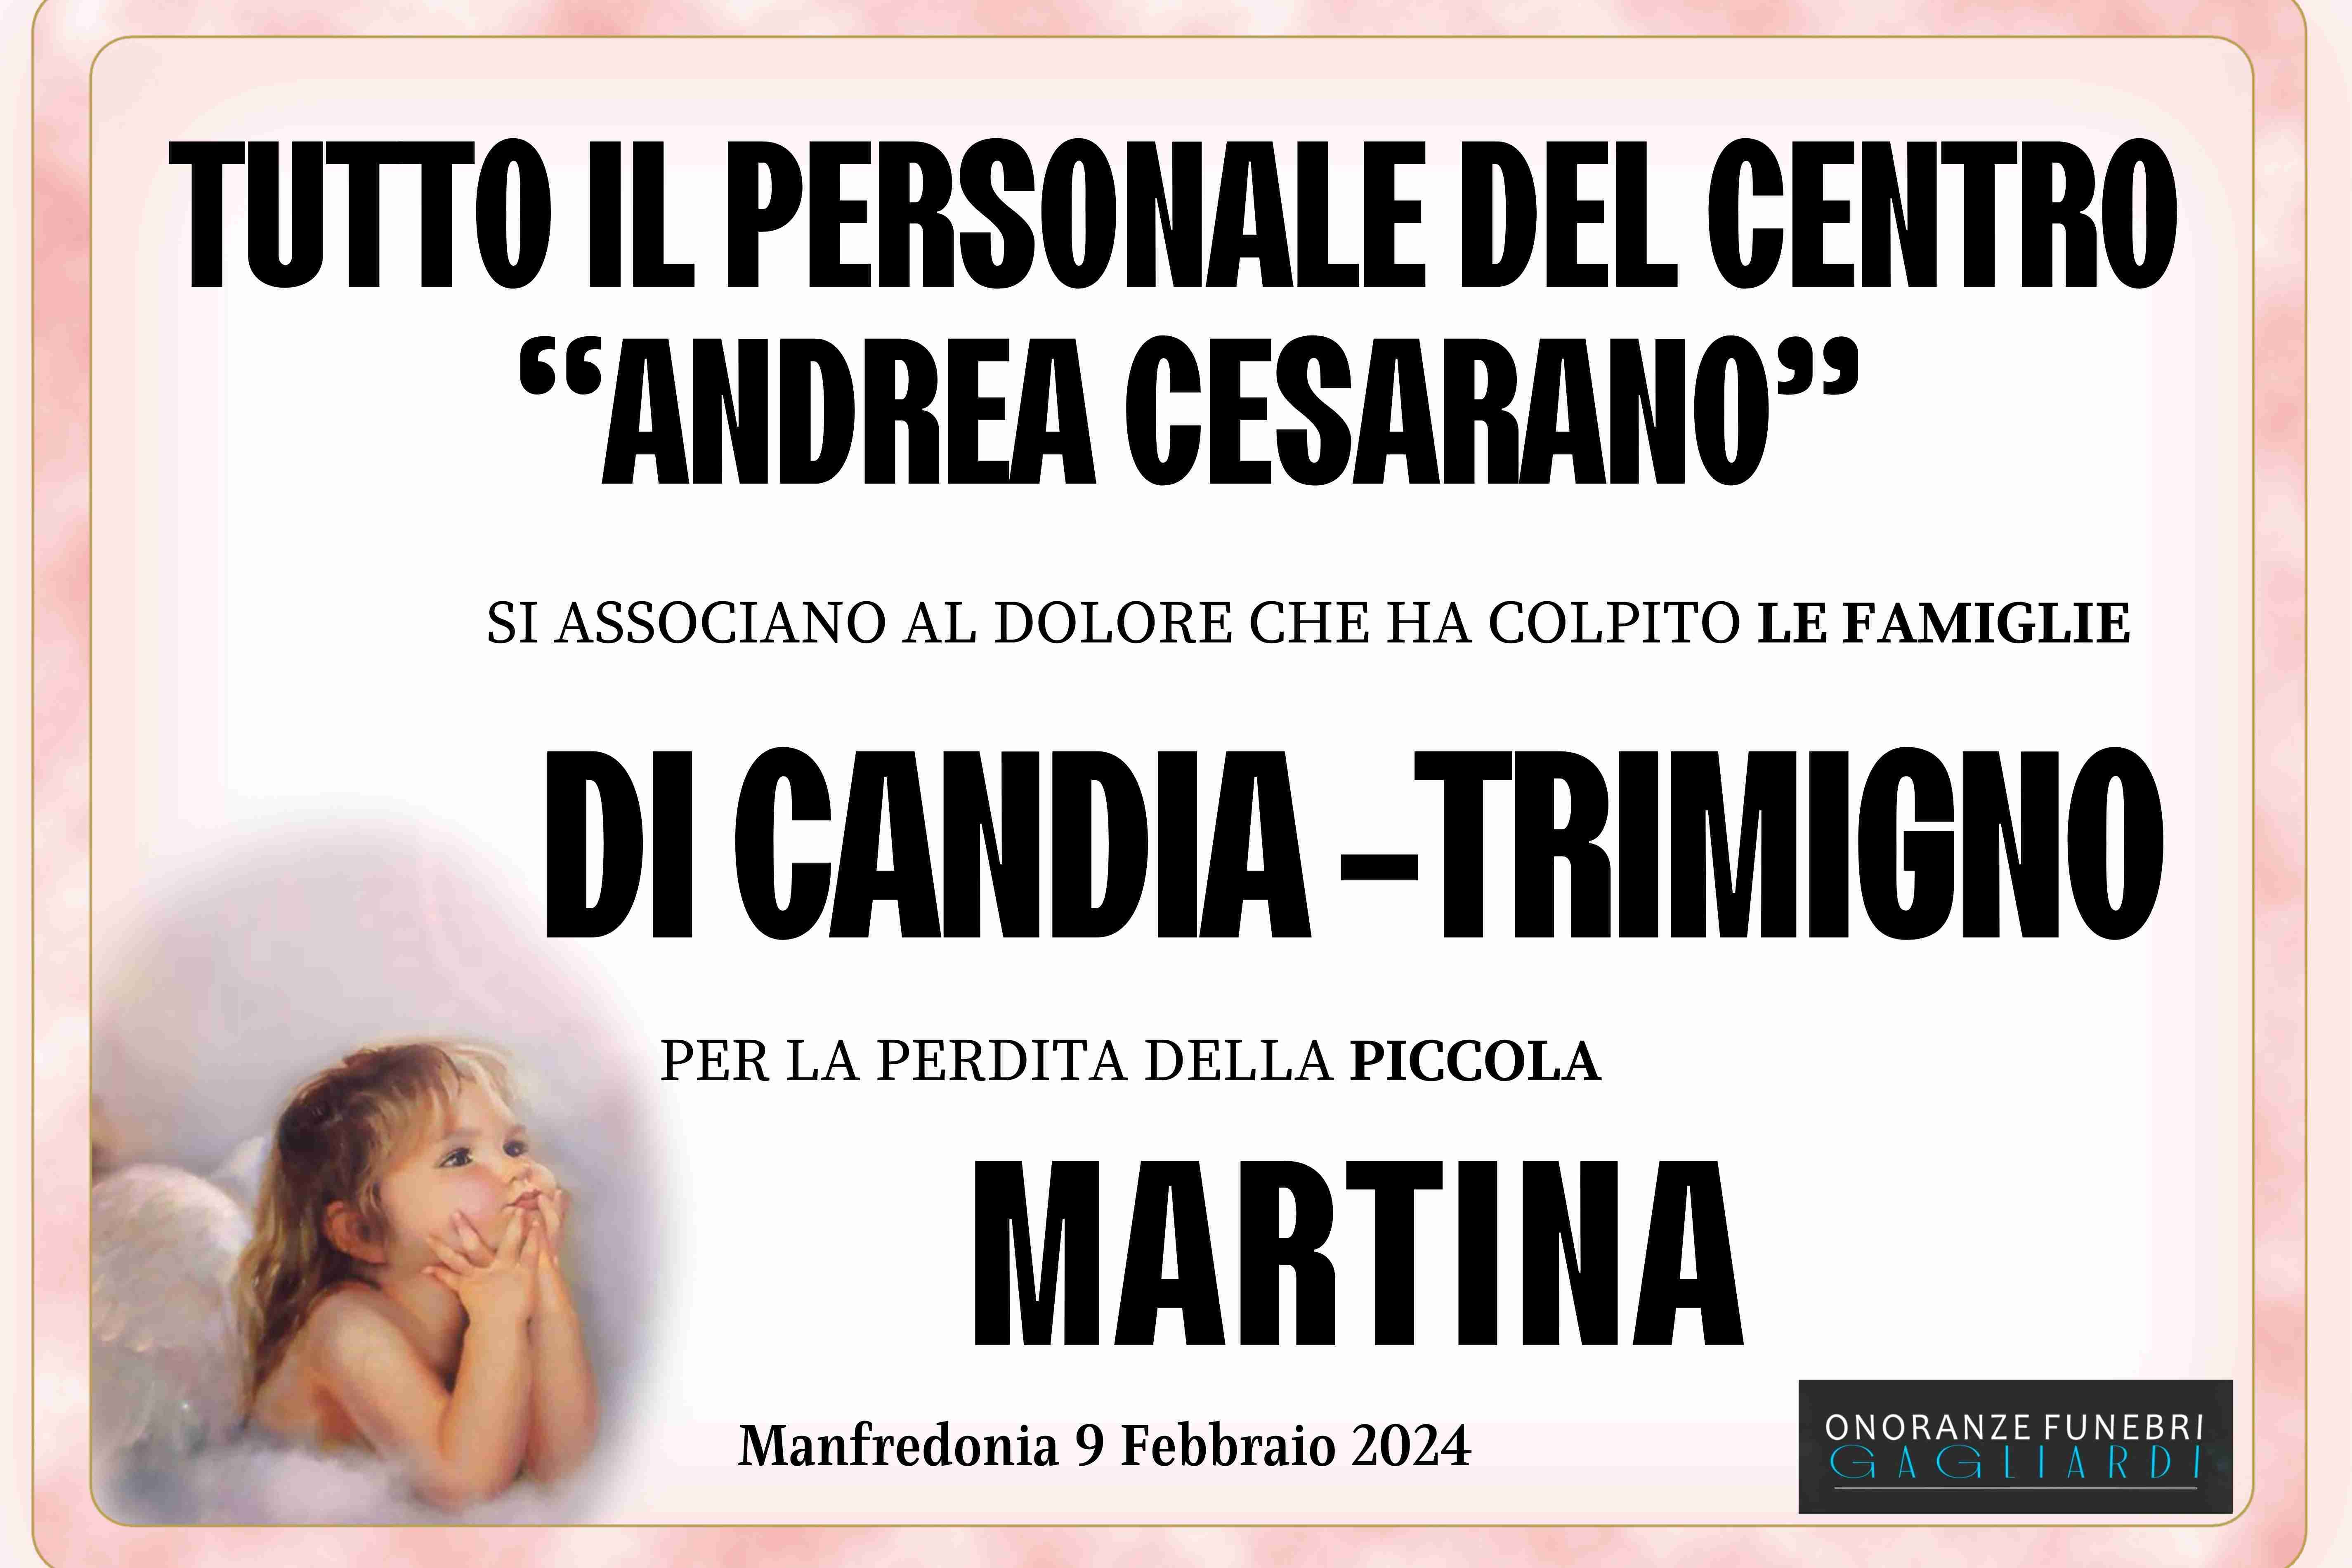 Martina Di Candia